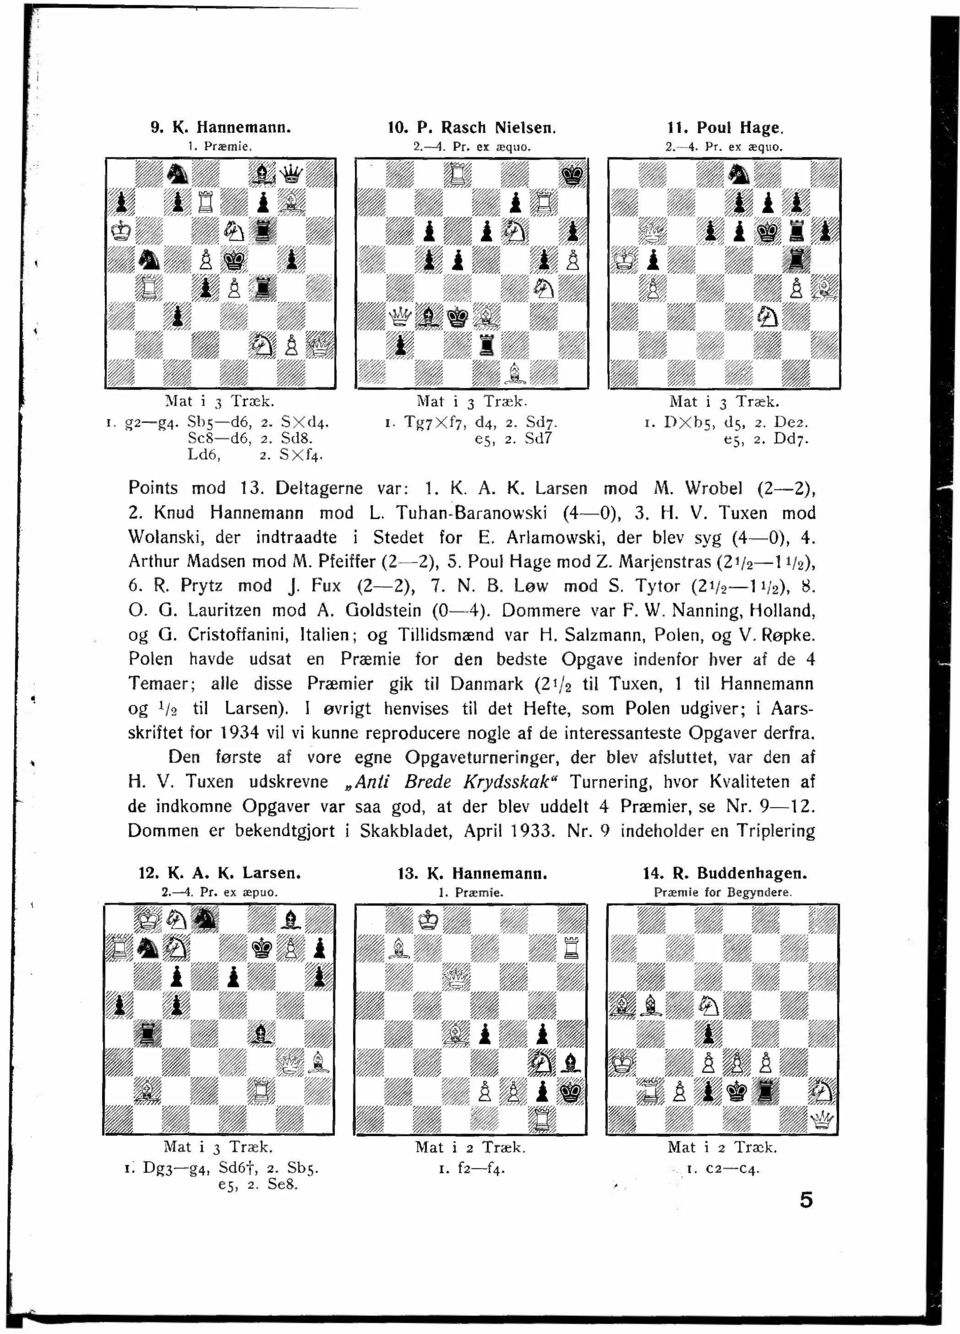 Tuxen mod Wolanski, der indtraadte i Stedet for E. Arlamowski, der blev syg (4-0), 4. Arthur Madsen mod M. Pfeiffer (2-2), 5. Poul Hage mod Z. Marjenstras (2t/2-t 1f2), 6. R. Prytz mod J.